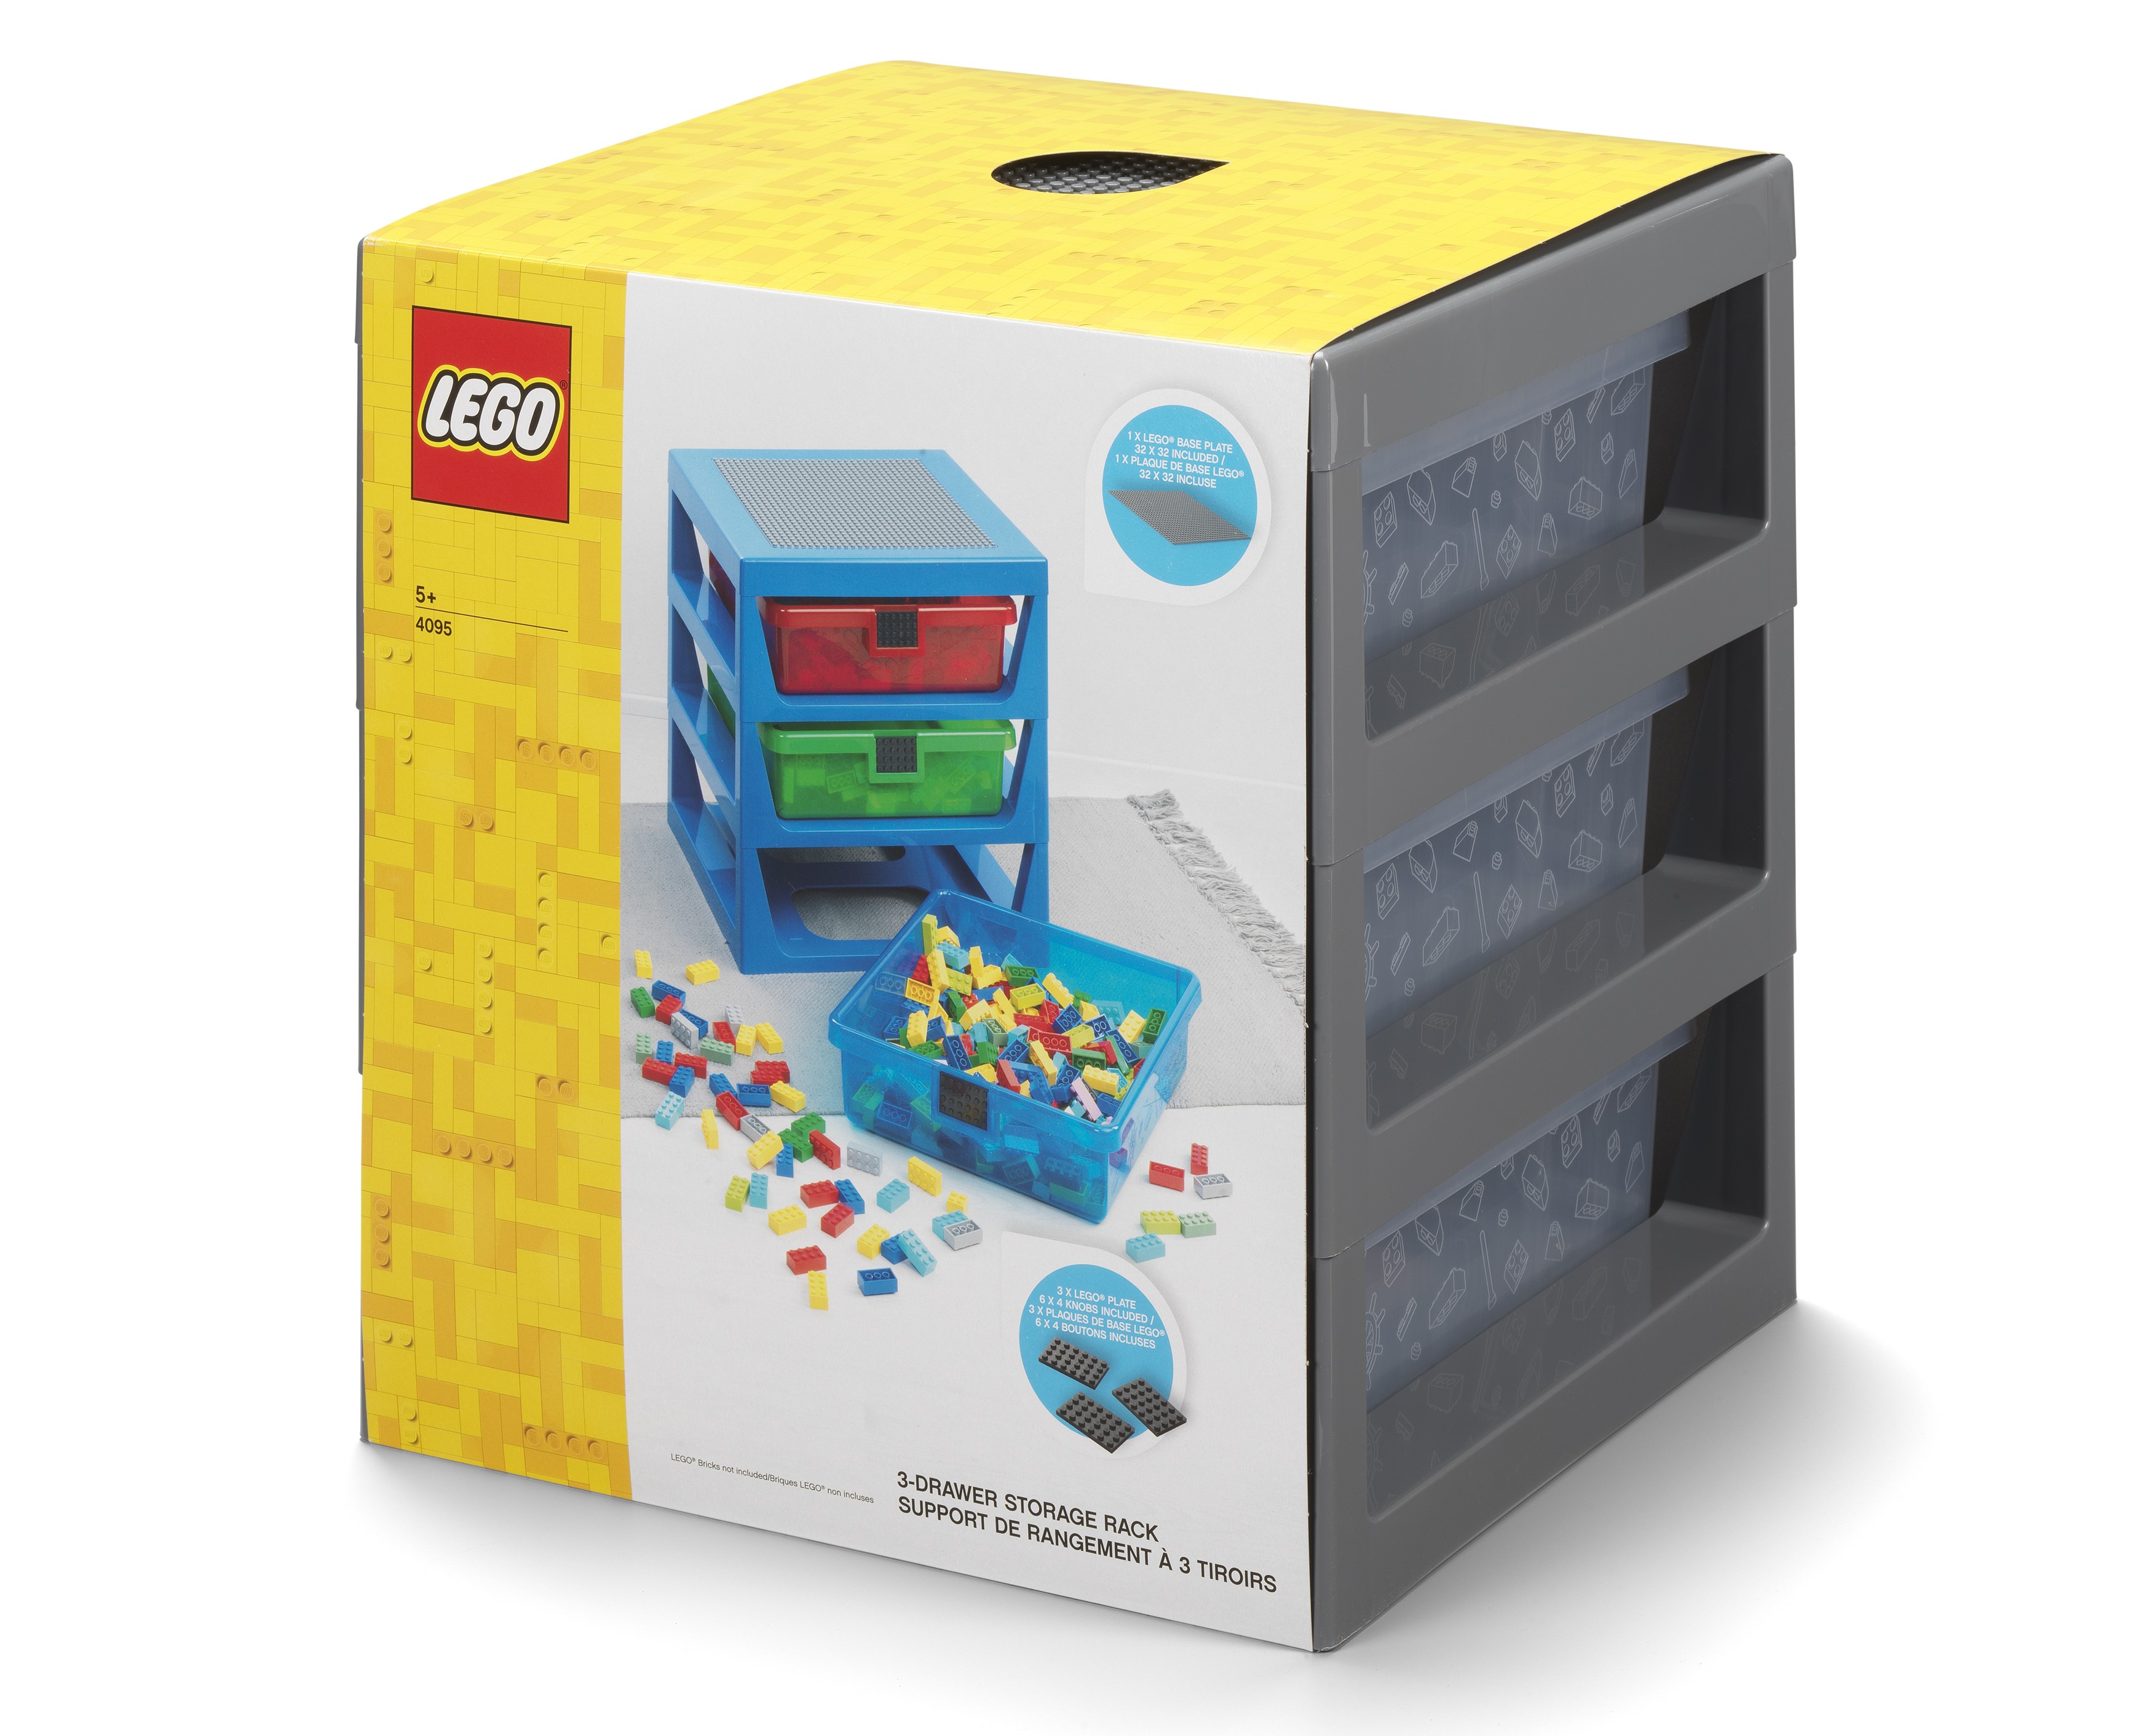 38 idées & astuces ingénieuses pour le rangement des Lego